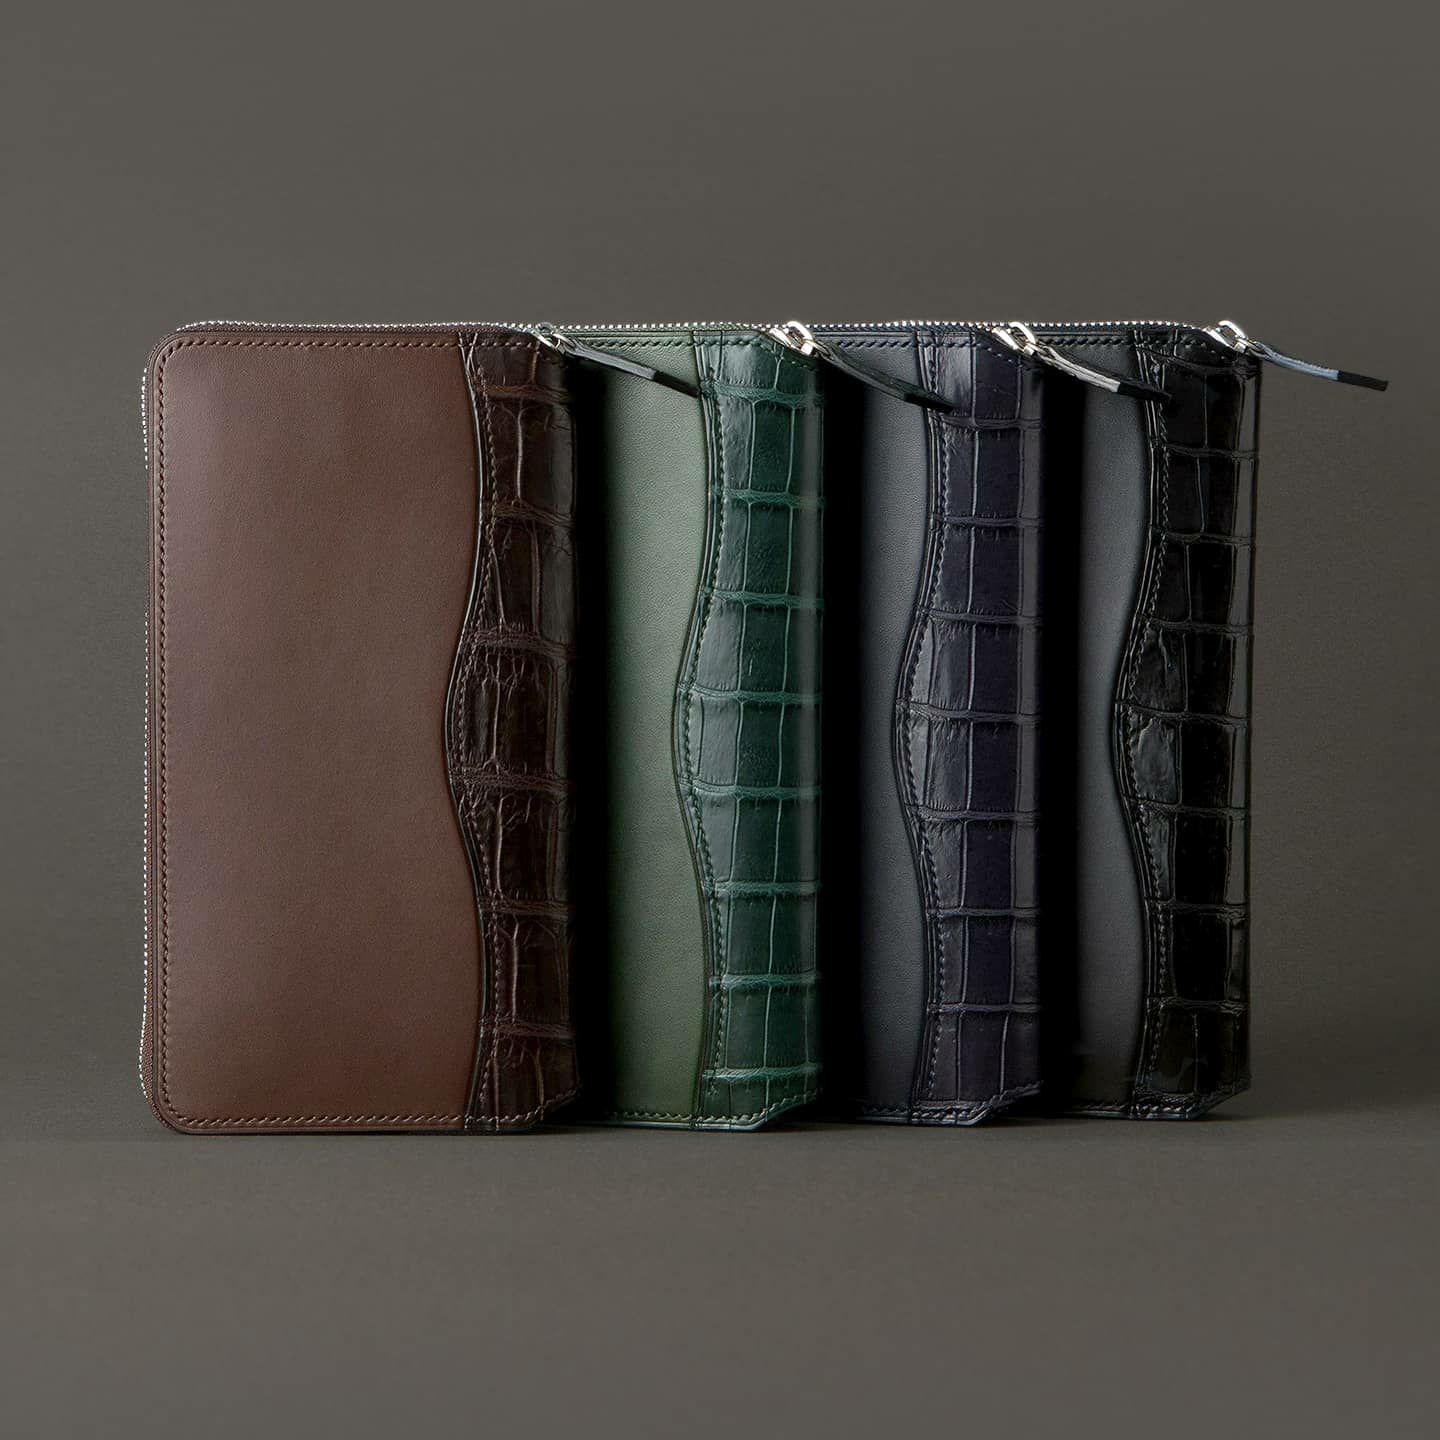 ブリランテ × クロコダイル ラウンドジップ長財布 | 大人の財布･ 長財布 など拘りの日本製ブランドなら Mens Leather Store